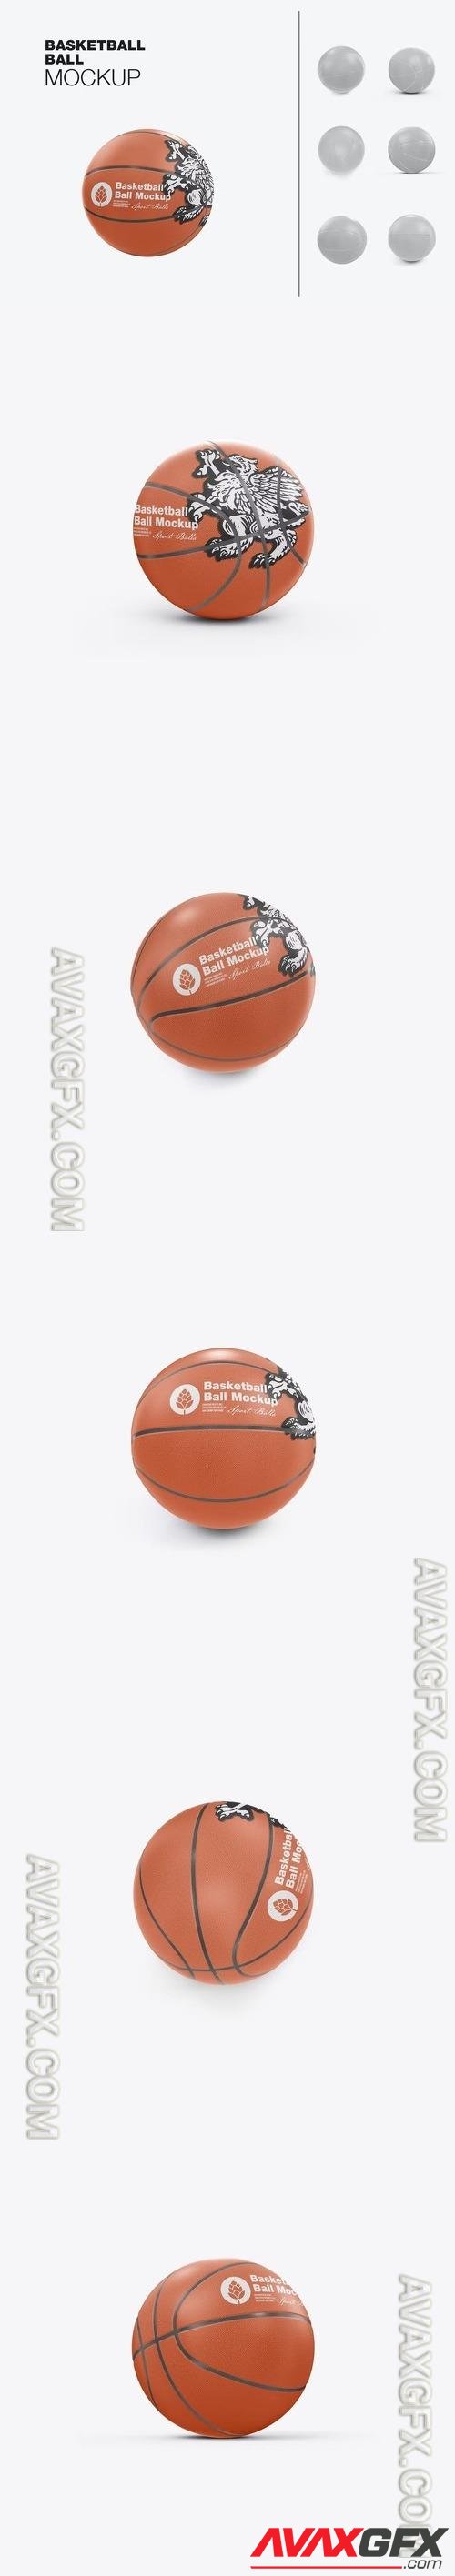 Basketball Ball Mockup PSD